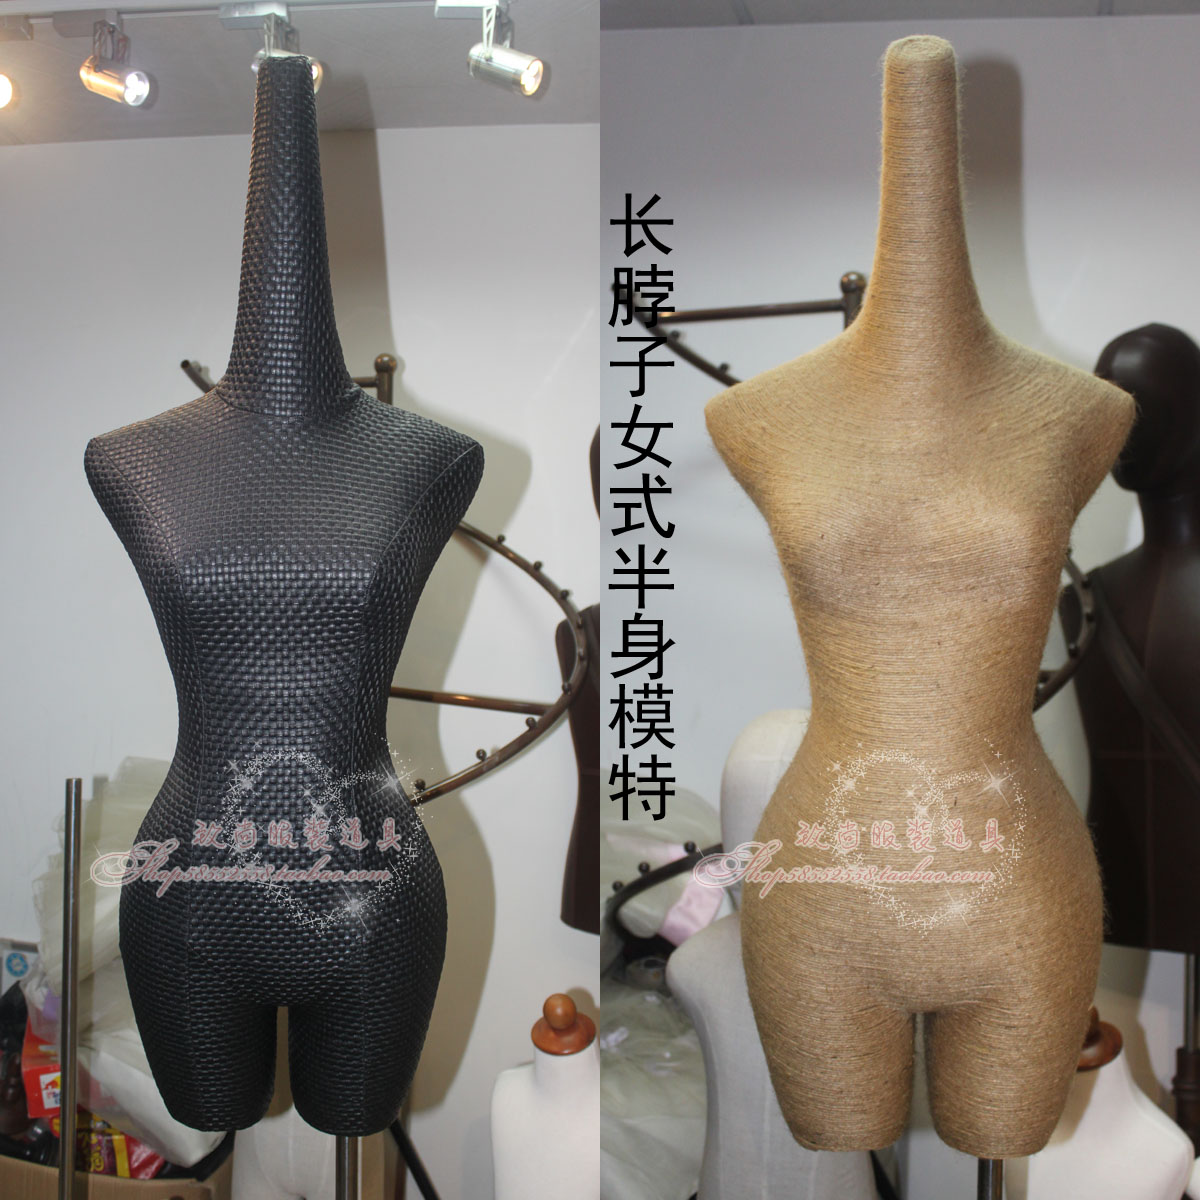 长脖子个性款 无手半身女式模特 黑色包皮麻绳 服装展示模特